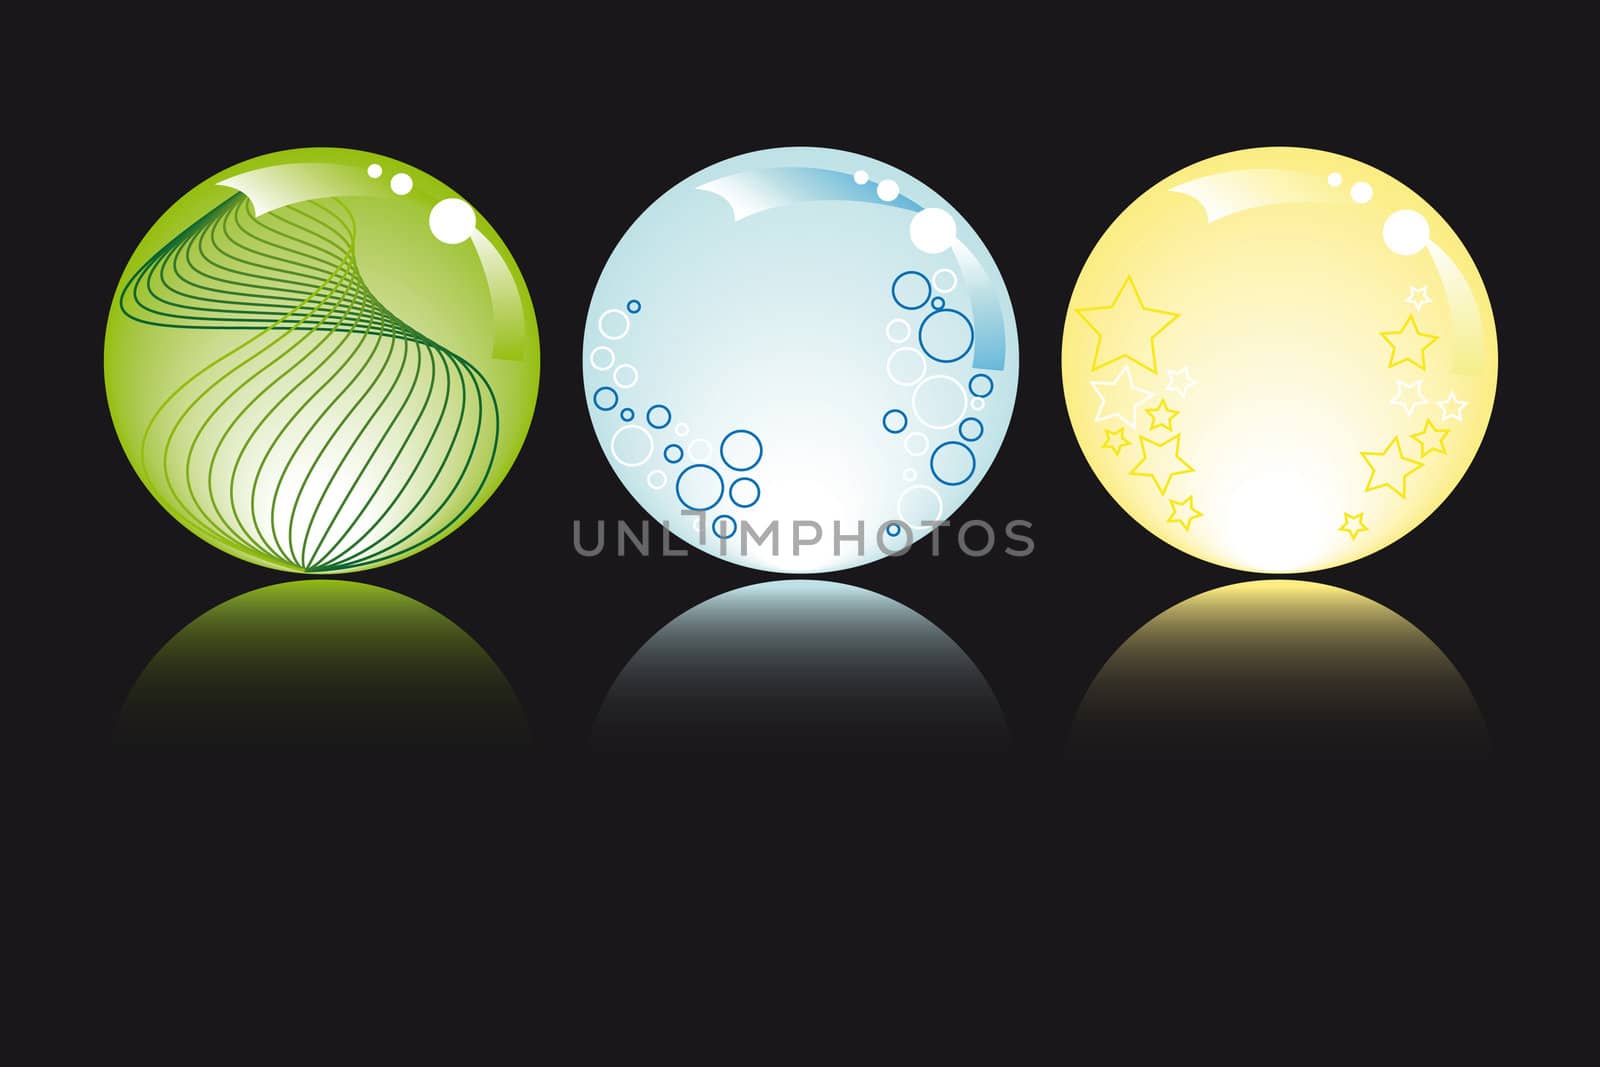 glowing spheres by karinclaus